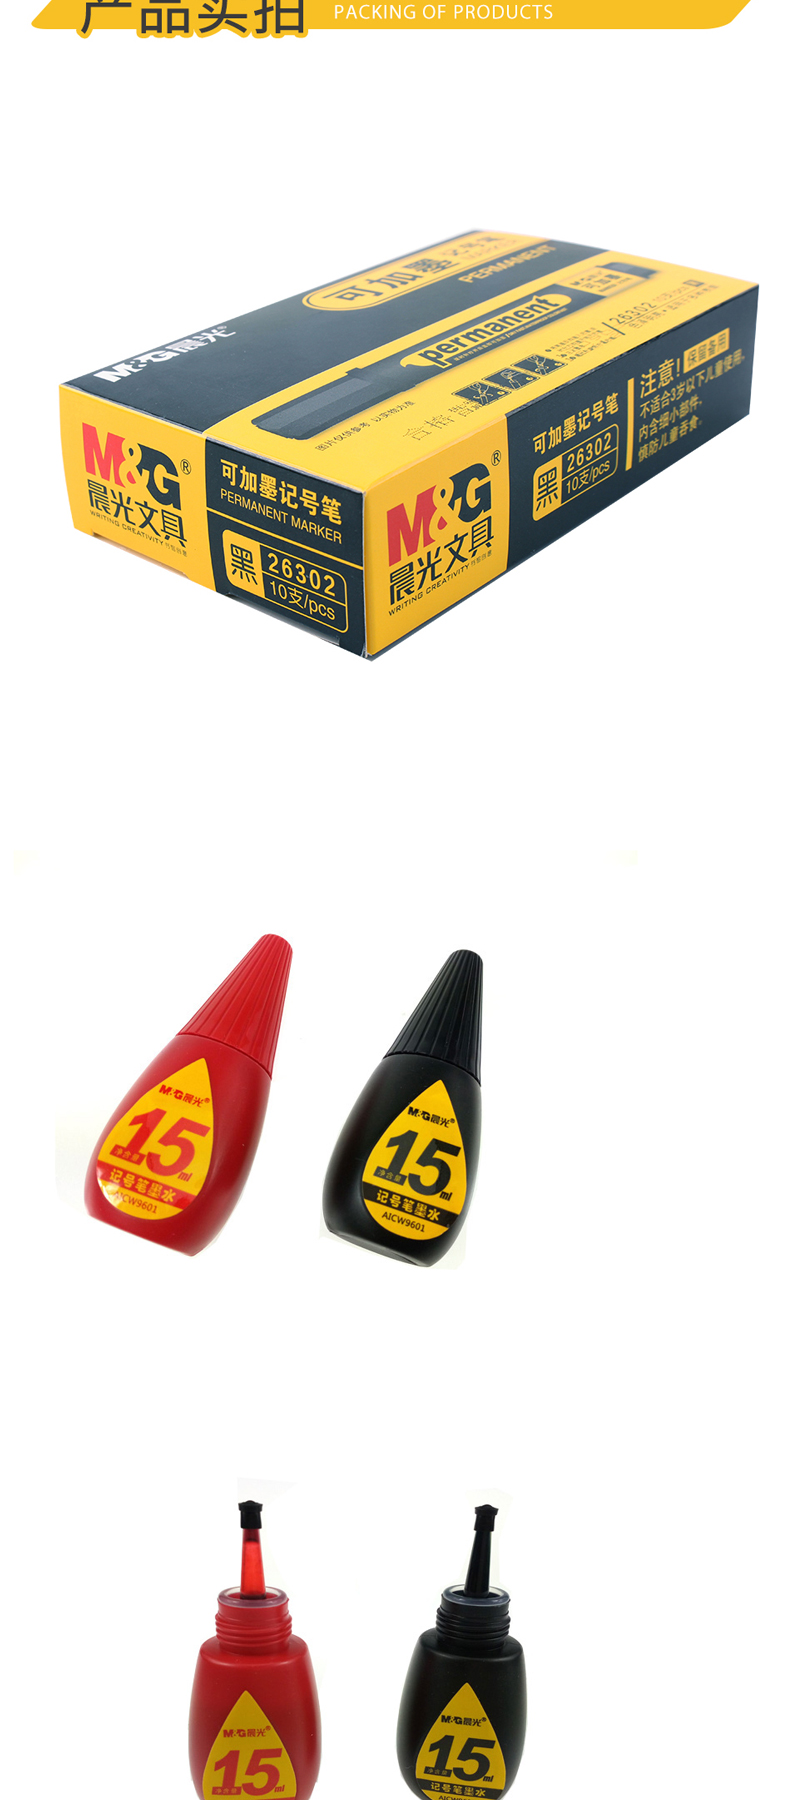 晨光 M＆G 可加墨记号笔 APM26302 2.0mm (红色) 10支/盒